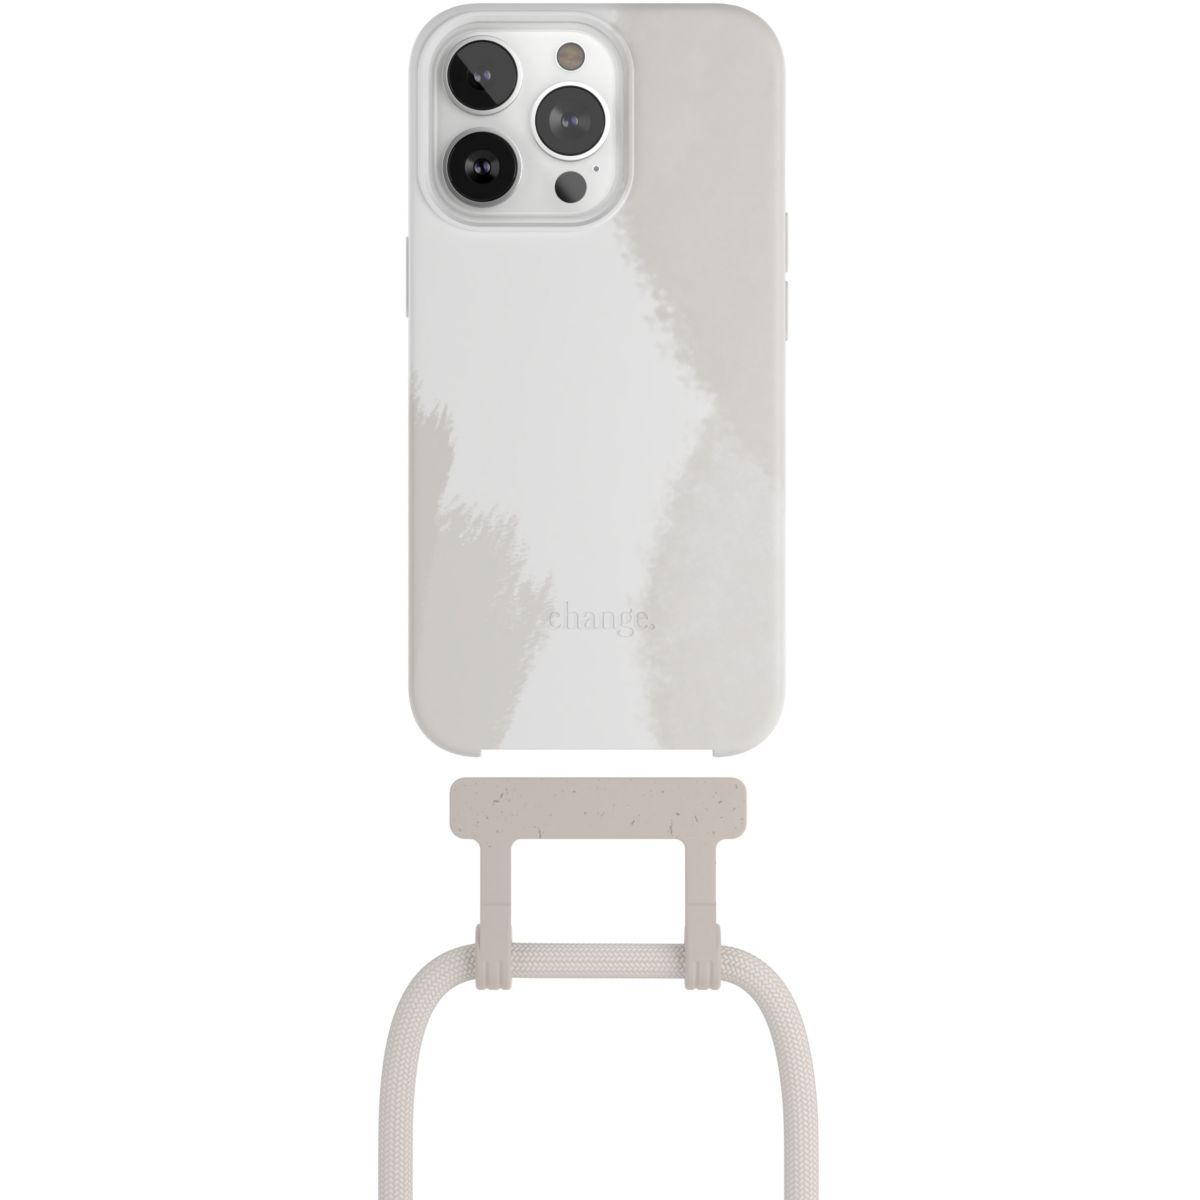 Coque Cordon iPhone 13 Pro Max, Antichoc avec Lanière Tour de Cou Réglable  - Noir - Français